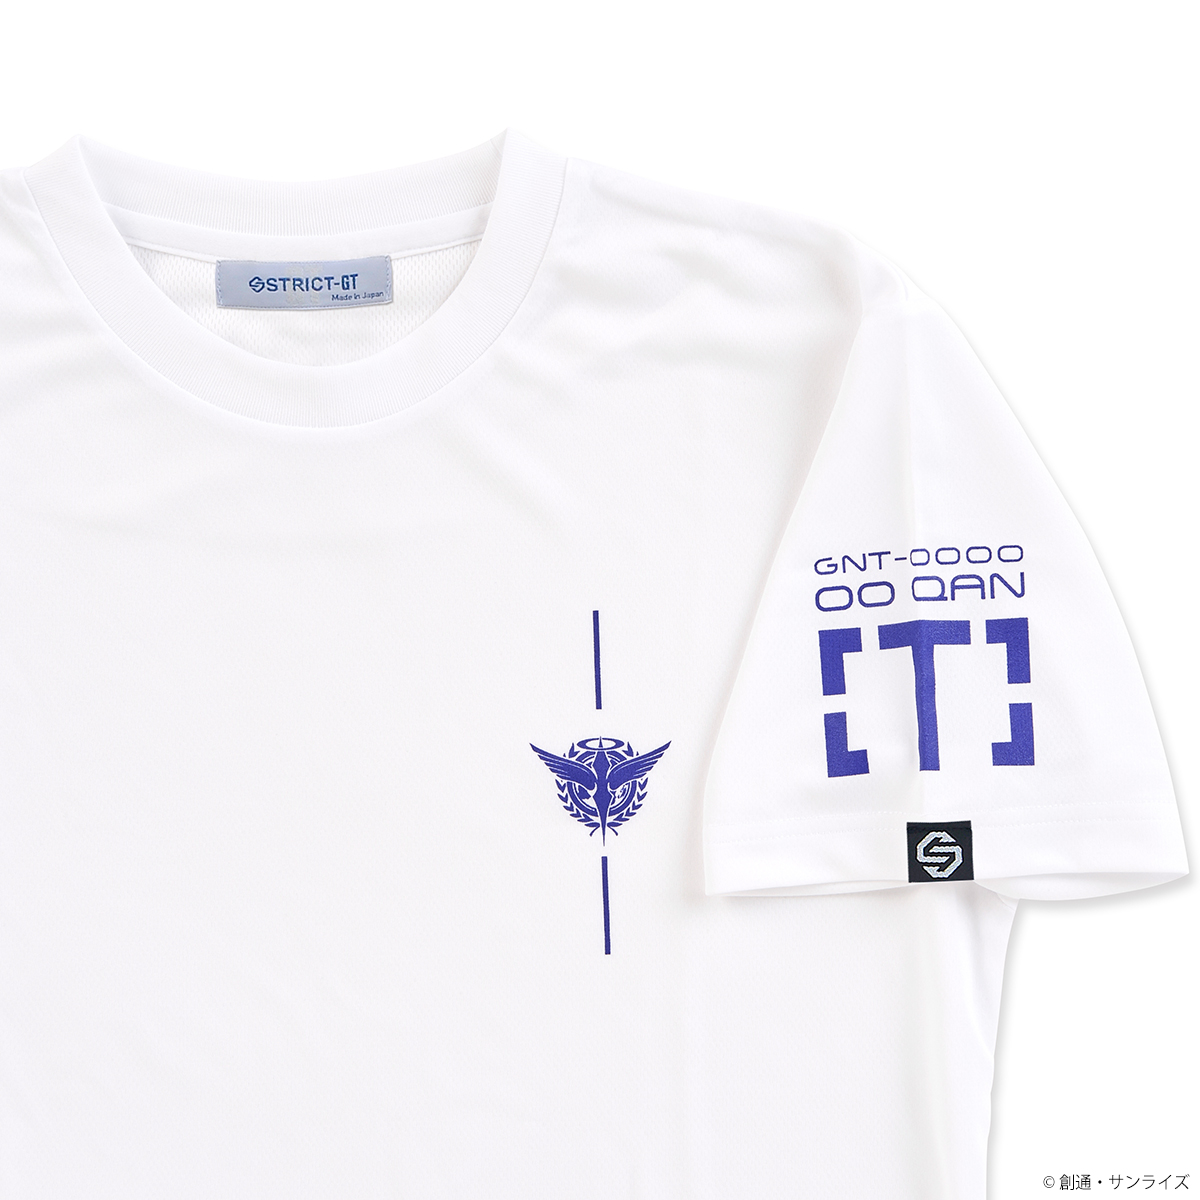 STRICT-G 『劇場版 機動戦士ガンダム00』 ドライTシャツ ダブルオークアンタ